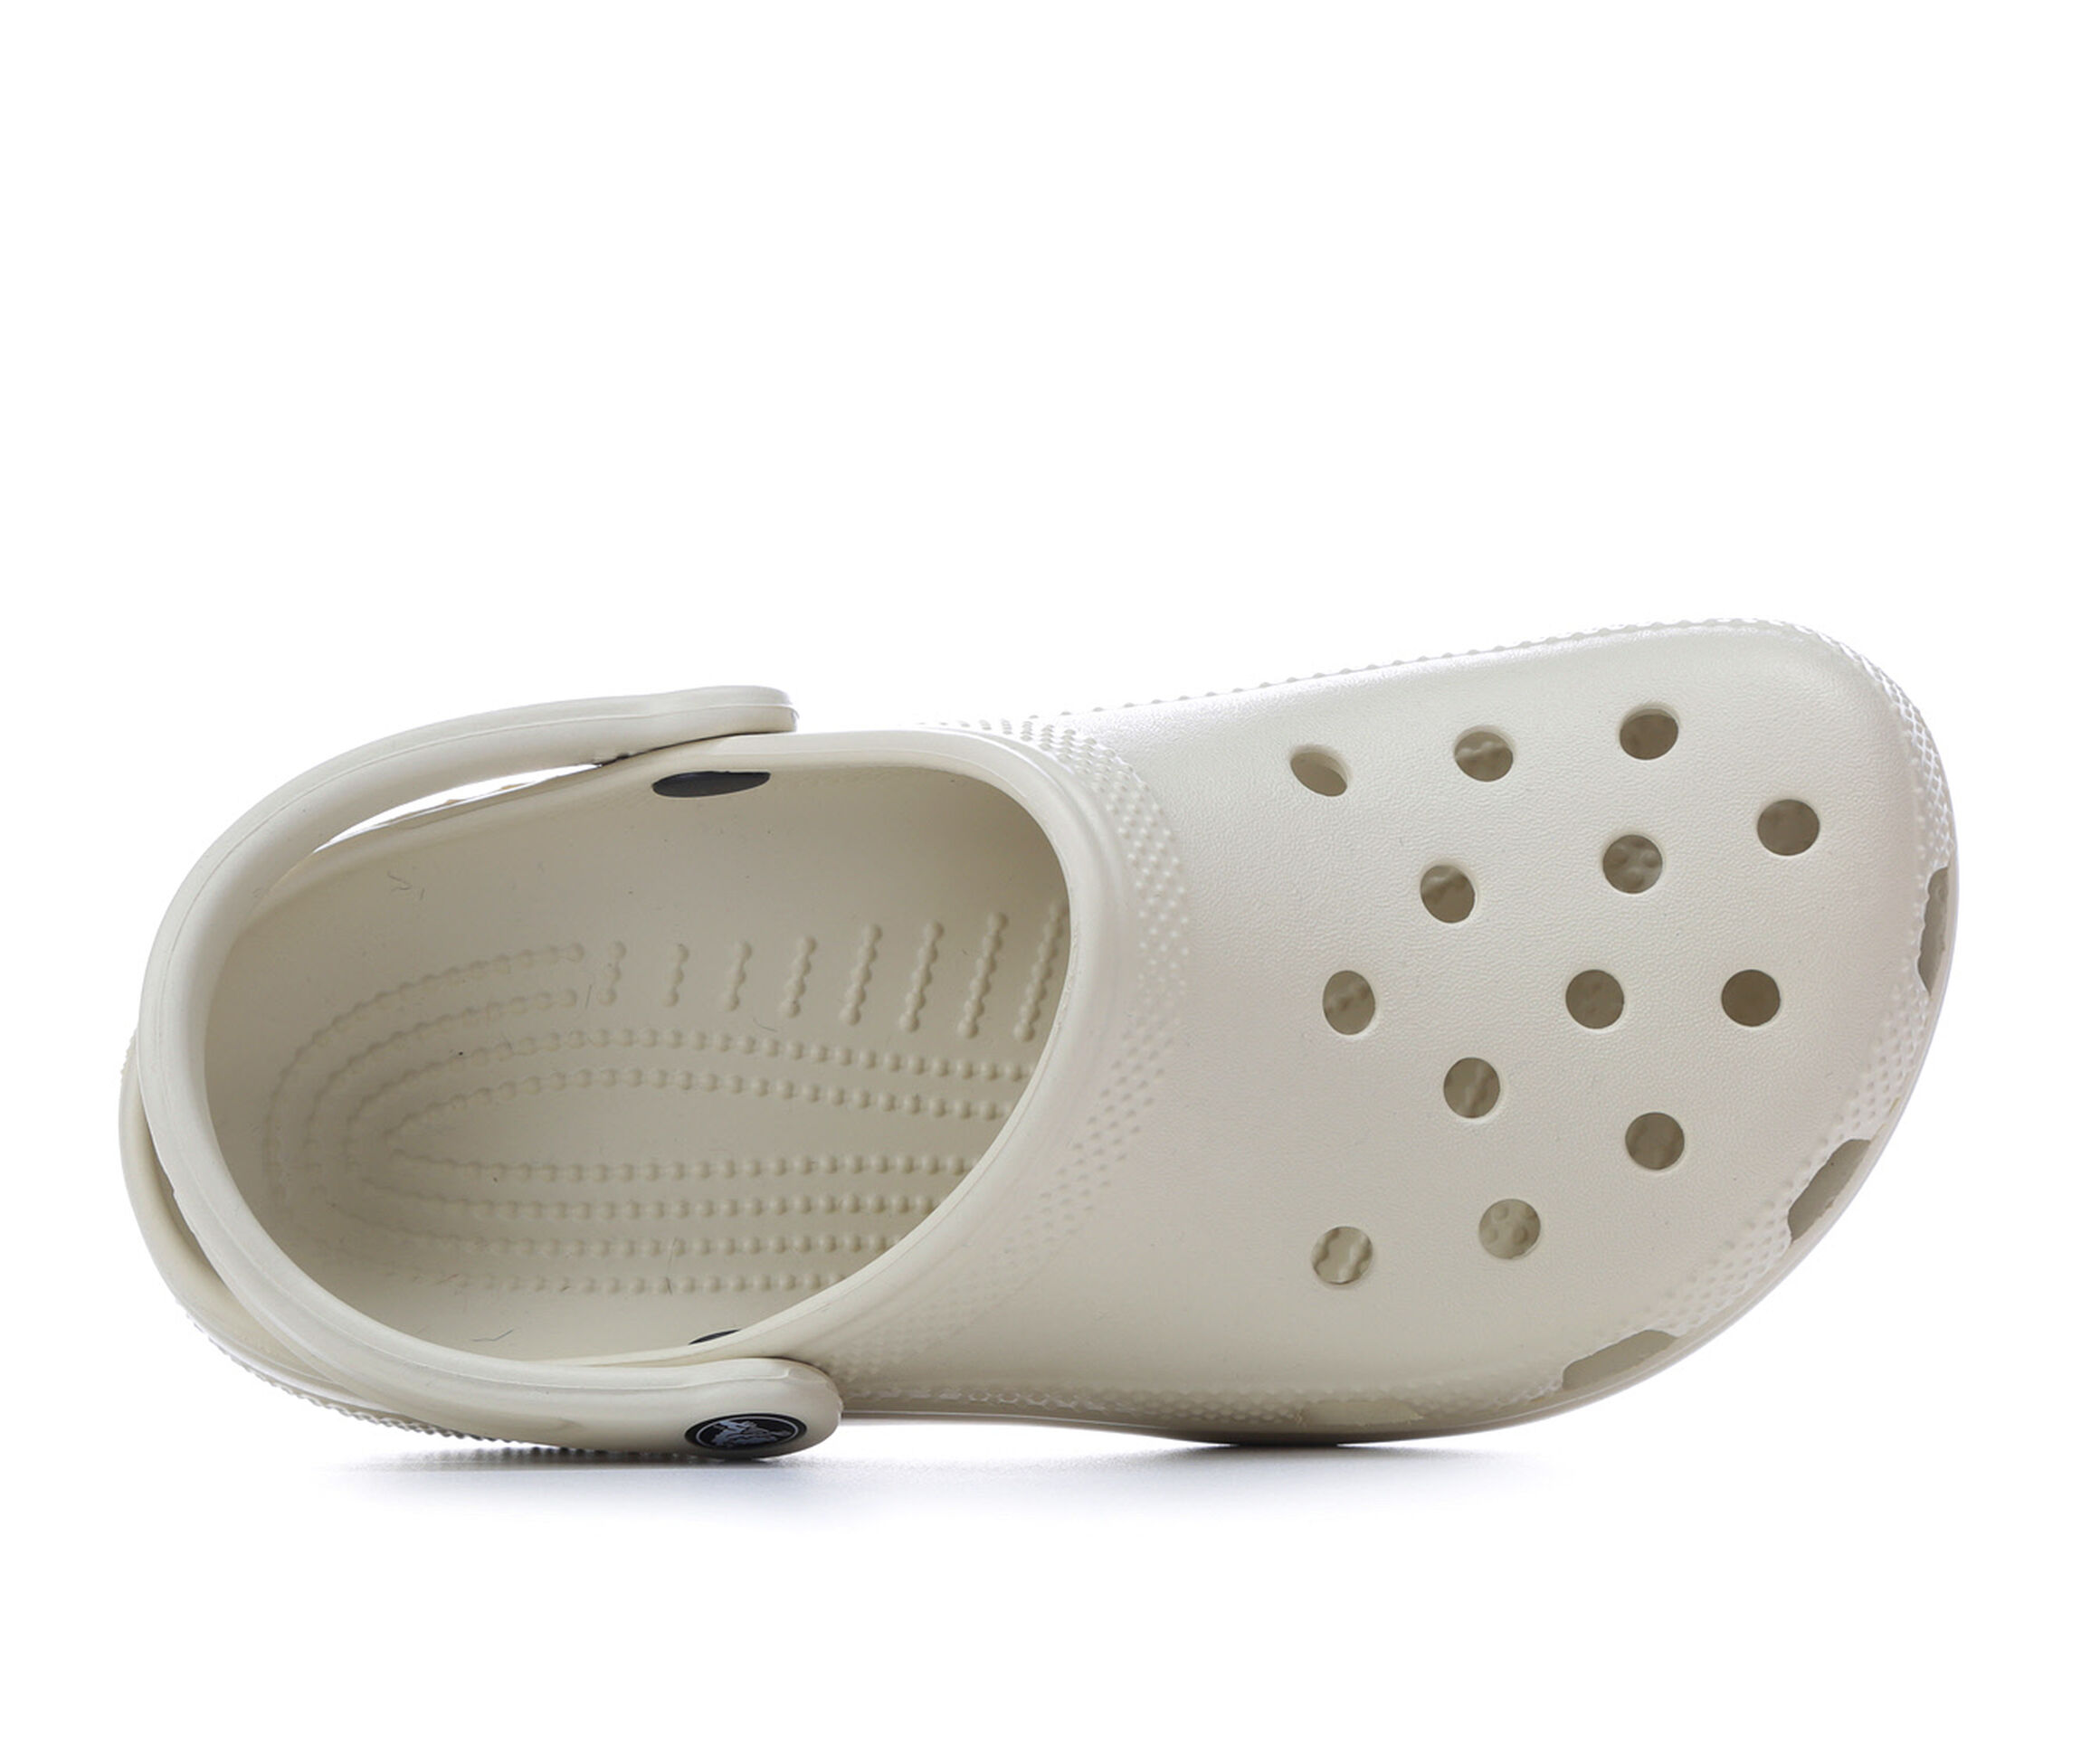 Crocs Shoes at Shoe Carnival | Classic Clogs, Non-Slip Shoes